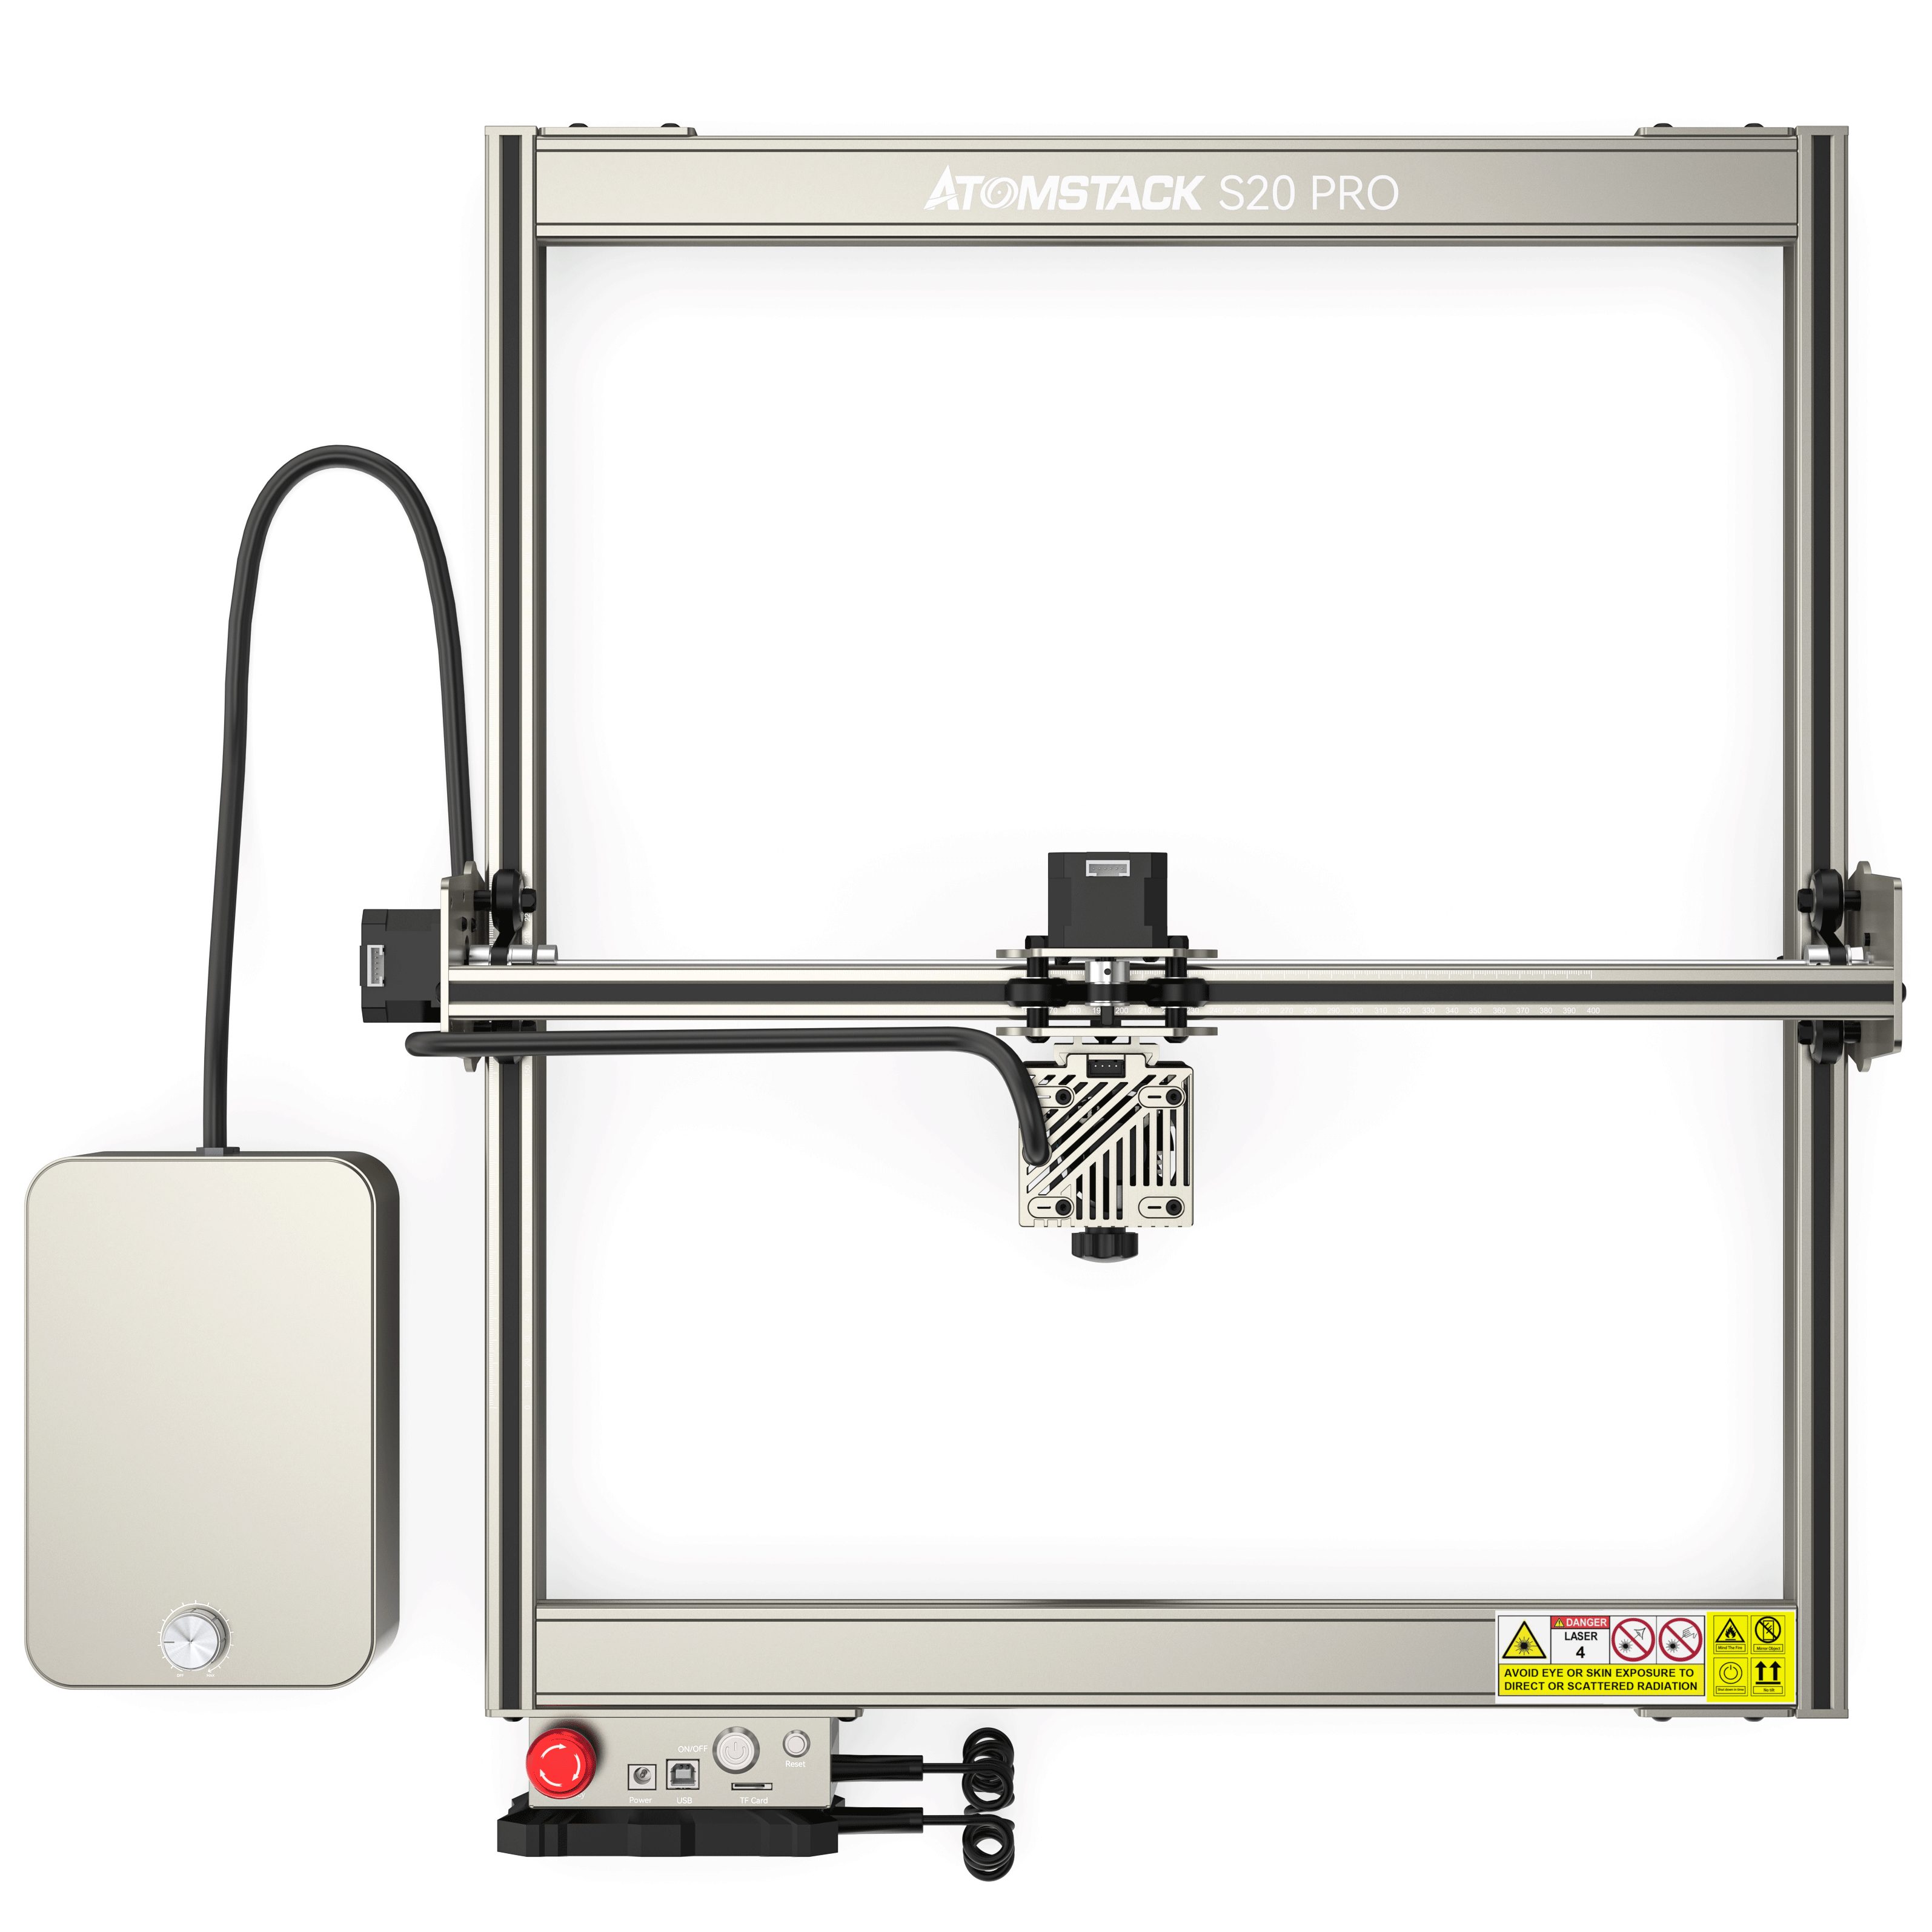 s20 pro laser engraving machine